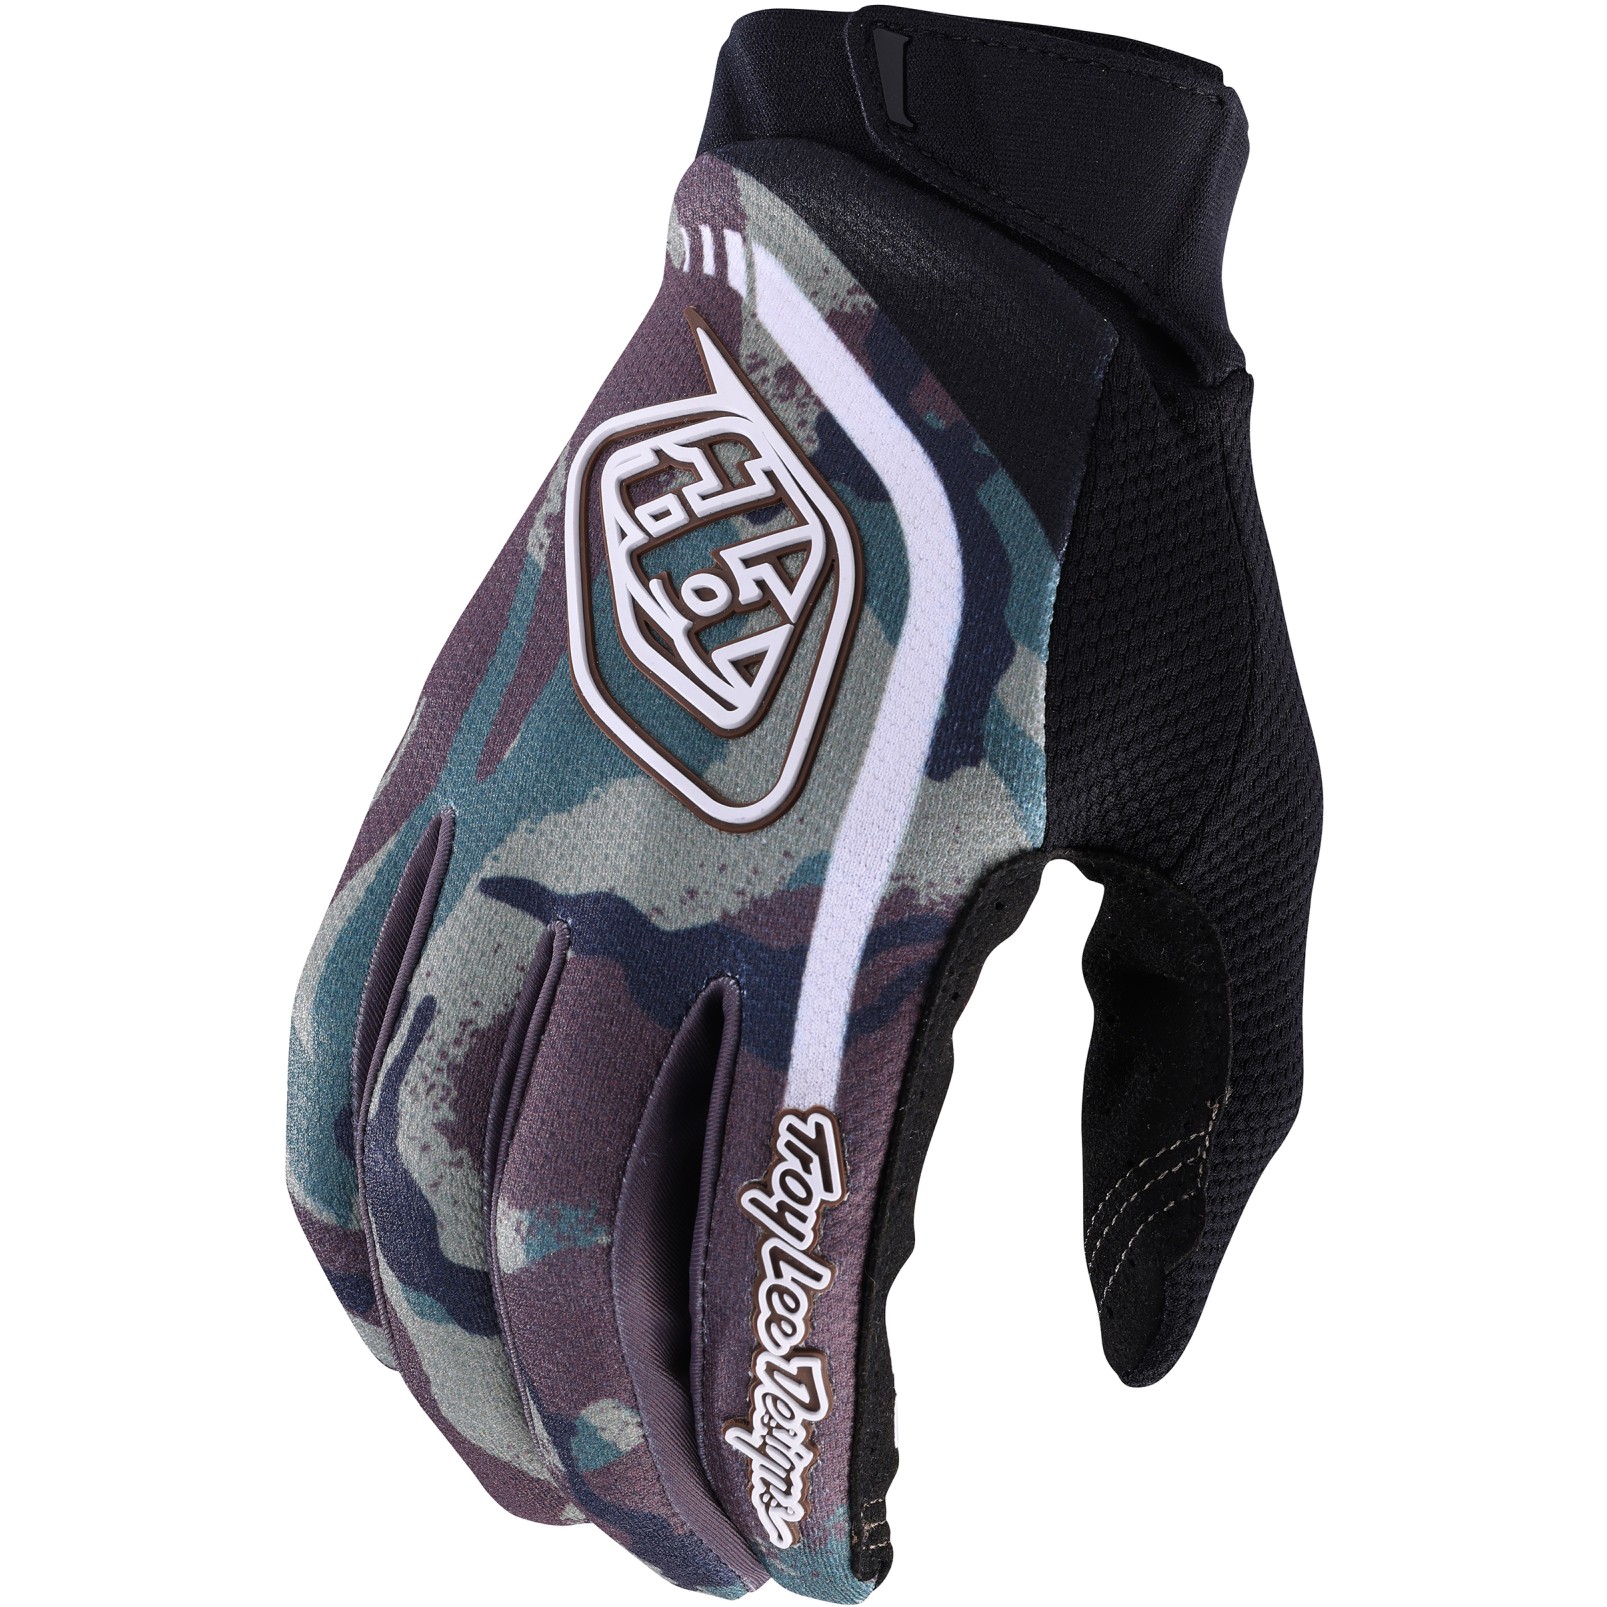 Productfoto van Troy Lee Designs GP Pro Handschoenen - Camo Army Green